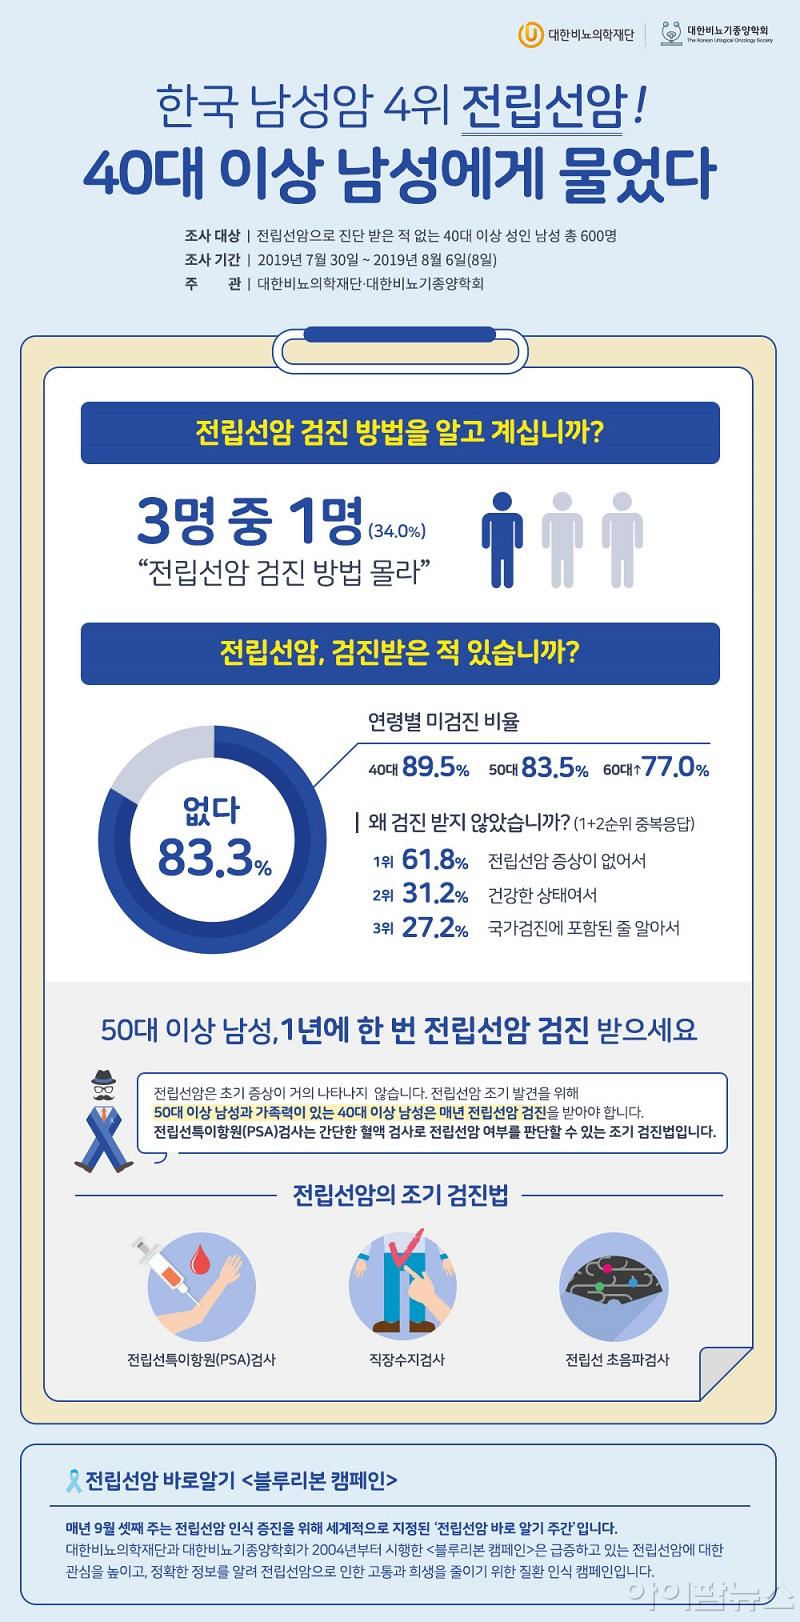 한국 남성암 4위 전립선암, 40대 이상 남성에게 물었다.jpg